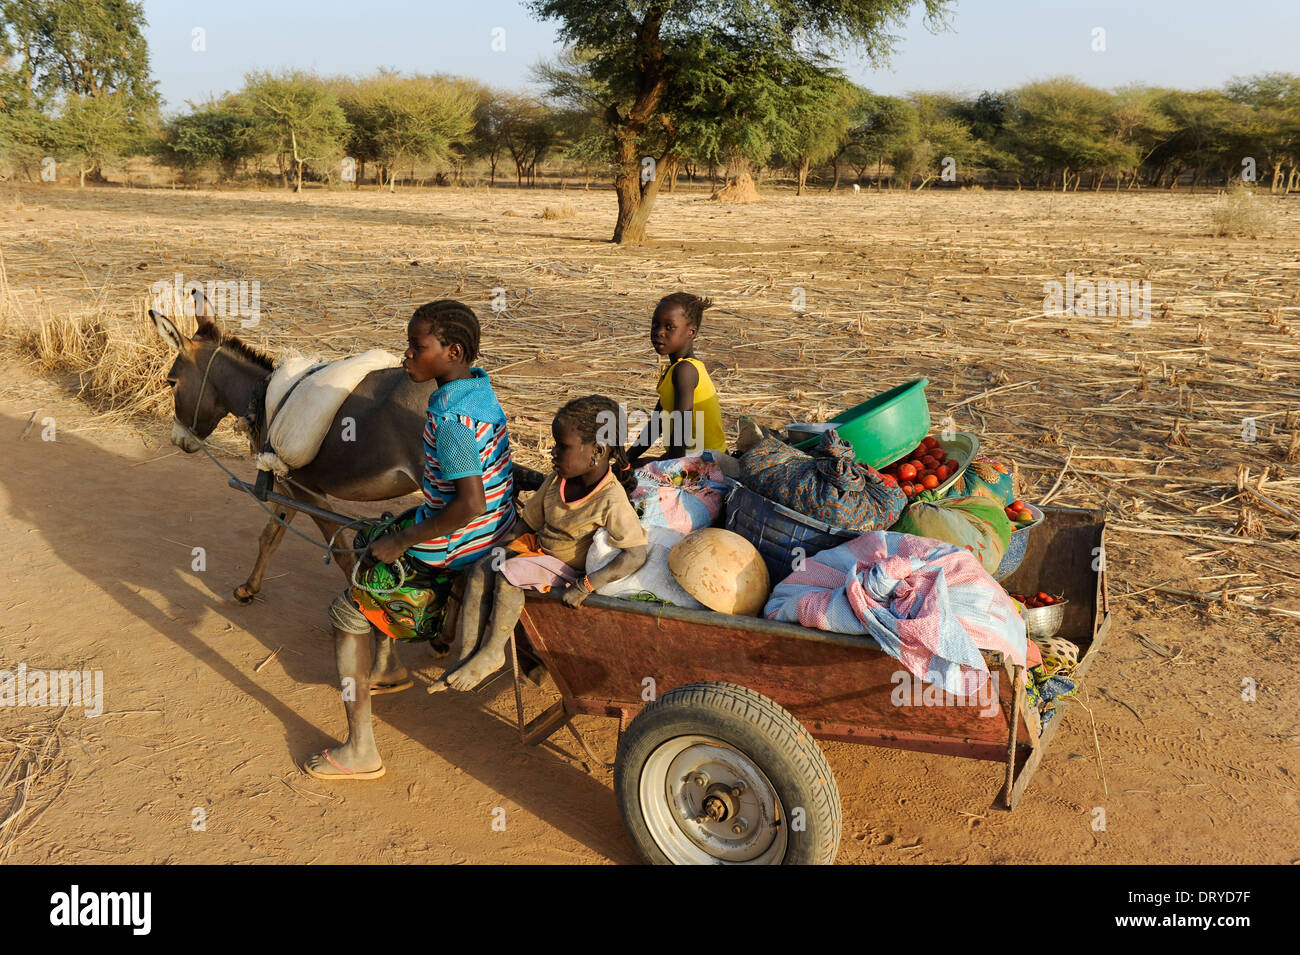 Burkina FASO Kaya, les enfants transportent des légumes avec un chariot âne de la ferme au marché, les ânes sont une cible des acheteurs chinois pour l'exportation pour produire de la gélantine à partir de la peau âne pour extraire Ejiao pour la médecine chinoise traditionnelle TCM Banque D'Images